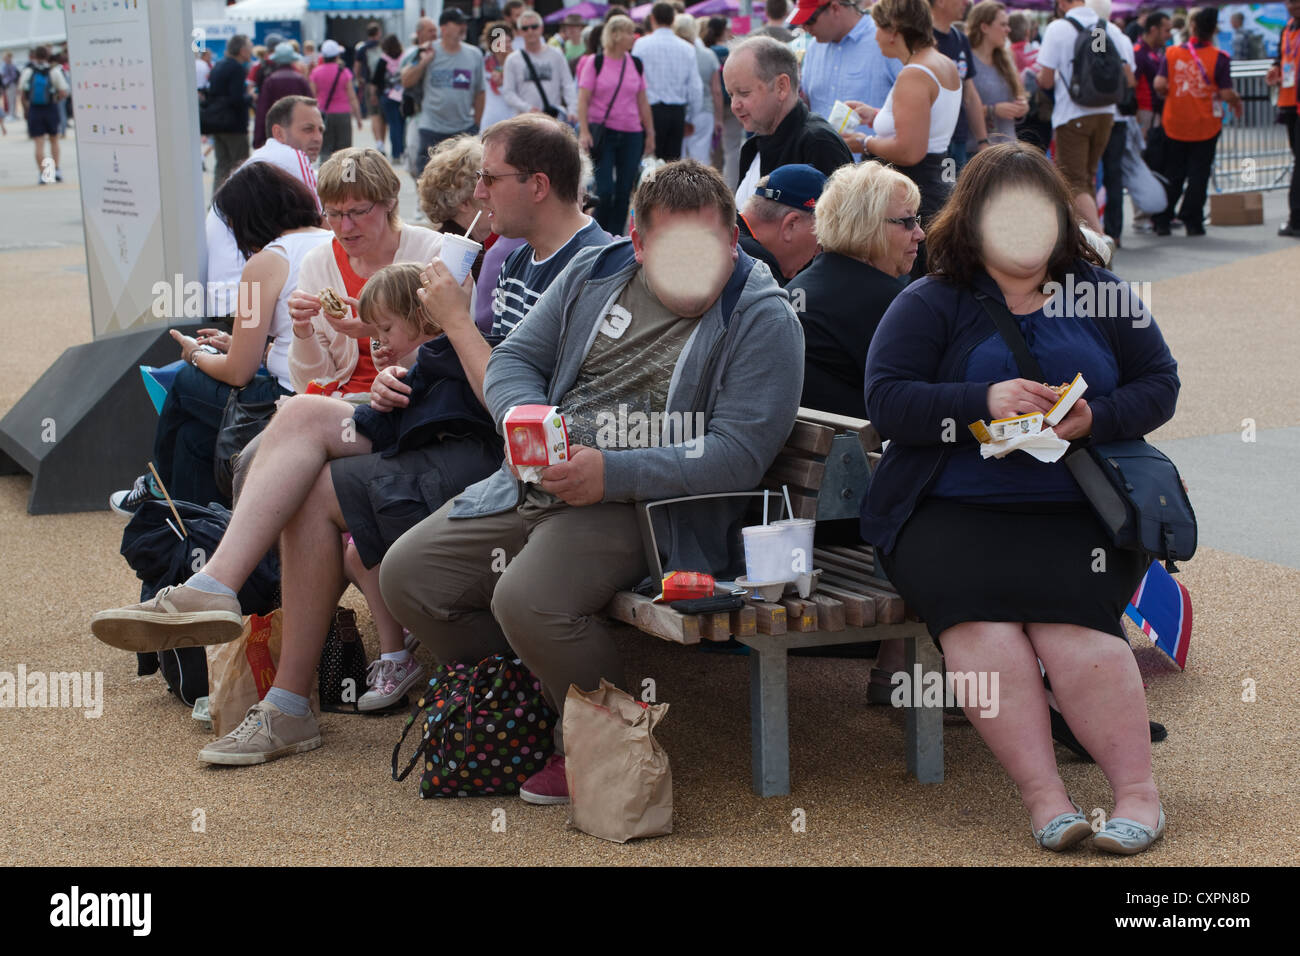 L'homme obèse et Woman eating Junk Food. Londres. L'Angleterre. UK. Les sociétés sises à reconnaître les visages masqués. Banque D'Images